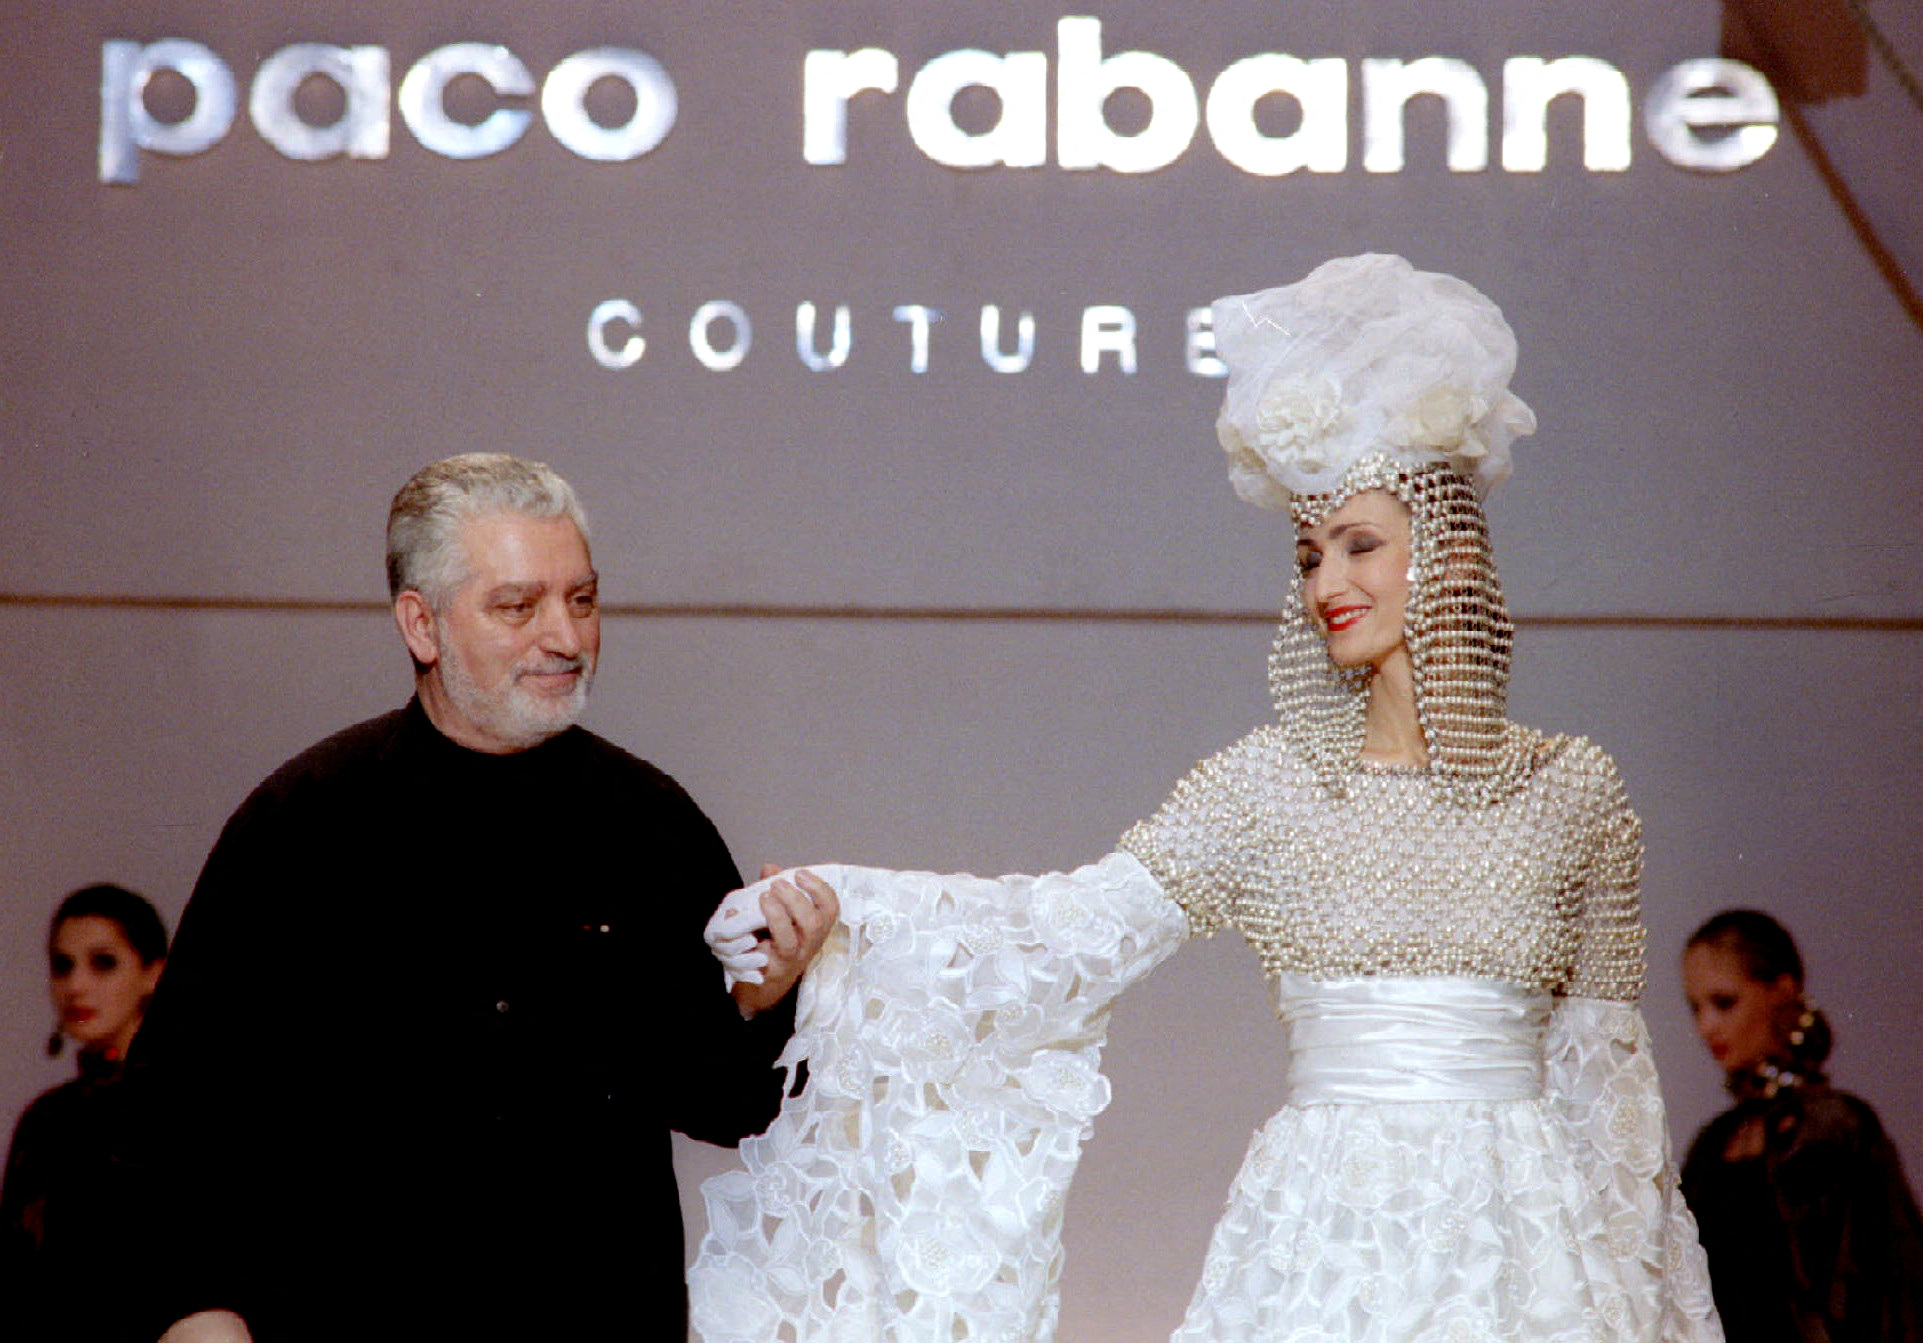 Murió Paco Rabanne a los 88 años, uno de los diseñadores de moda más influyentes - Infobae